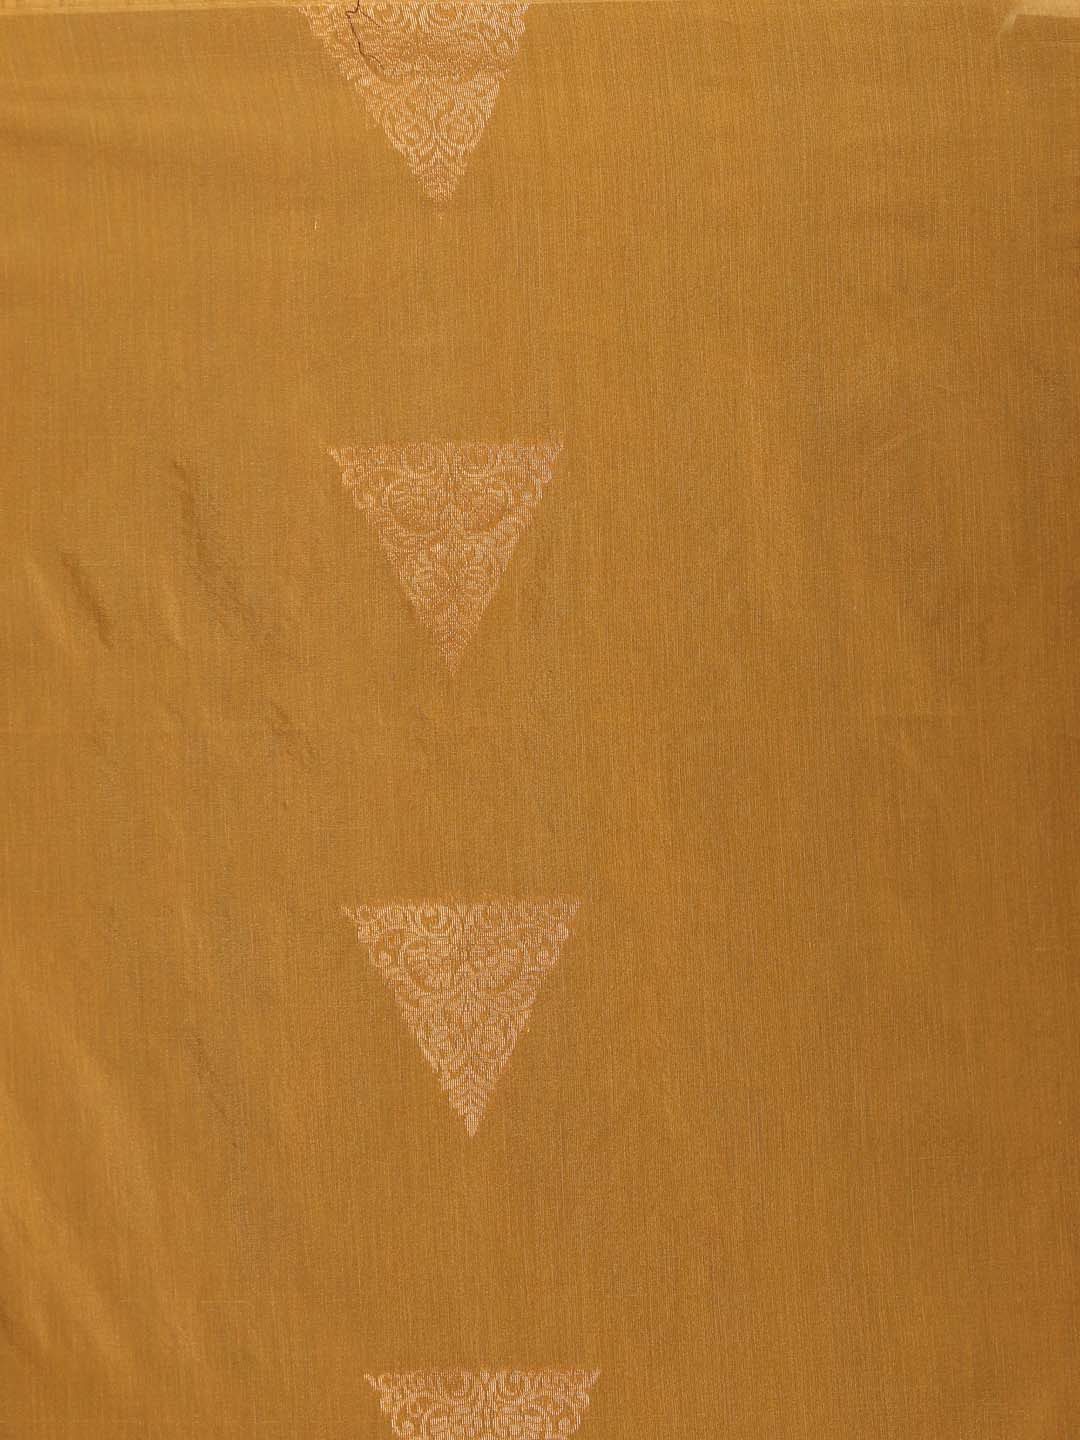 Indethnic Gold Pochampally Kora Silk by Cotton Saree - Saree Detail View